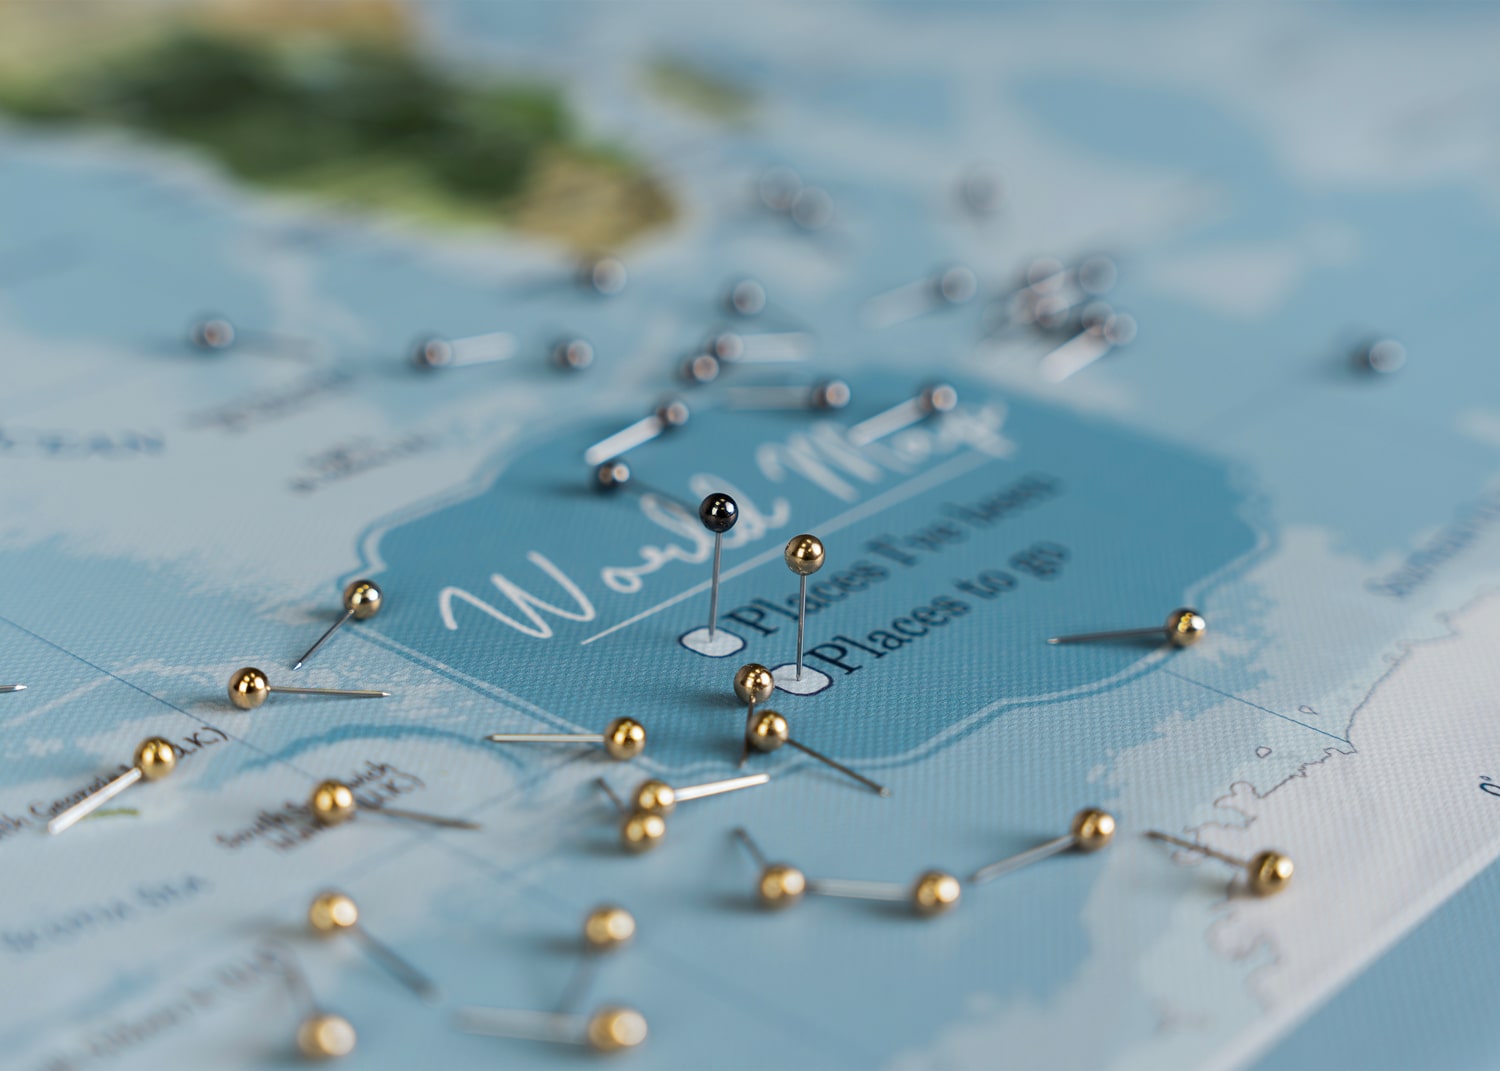 Rozsypane pinezki na błękitnej korkowej mapie świata na ścianę, ze złotymi i czarnymi szpilkami wskazującymi 'Miejsca odwiedzone' oraz 'Miejsca do odwiedzenia', praktyczny element wnętrza dla planowania podróży.